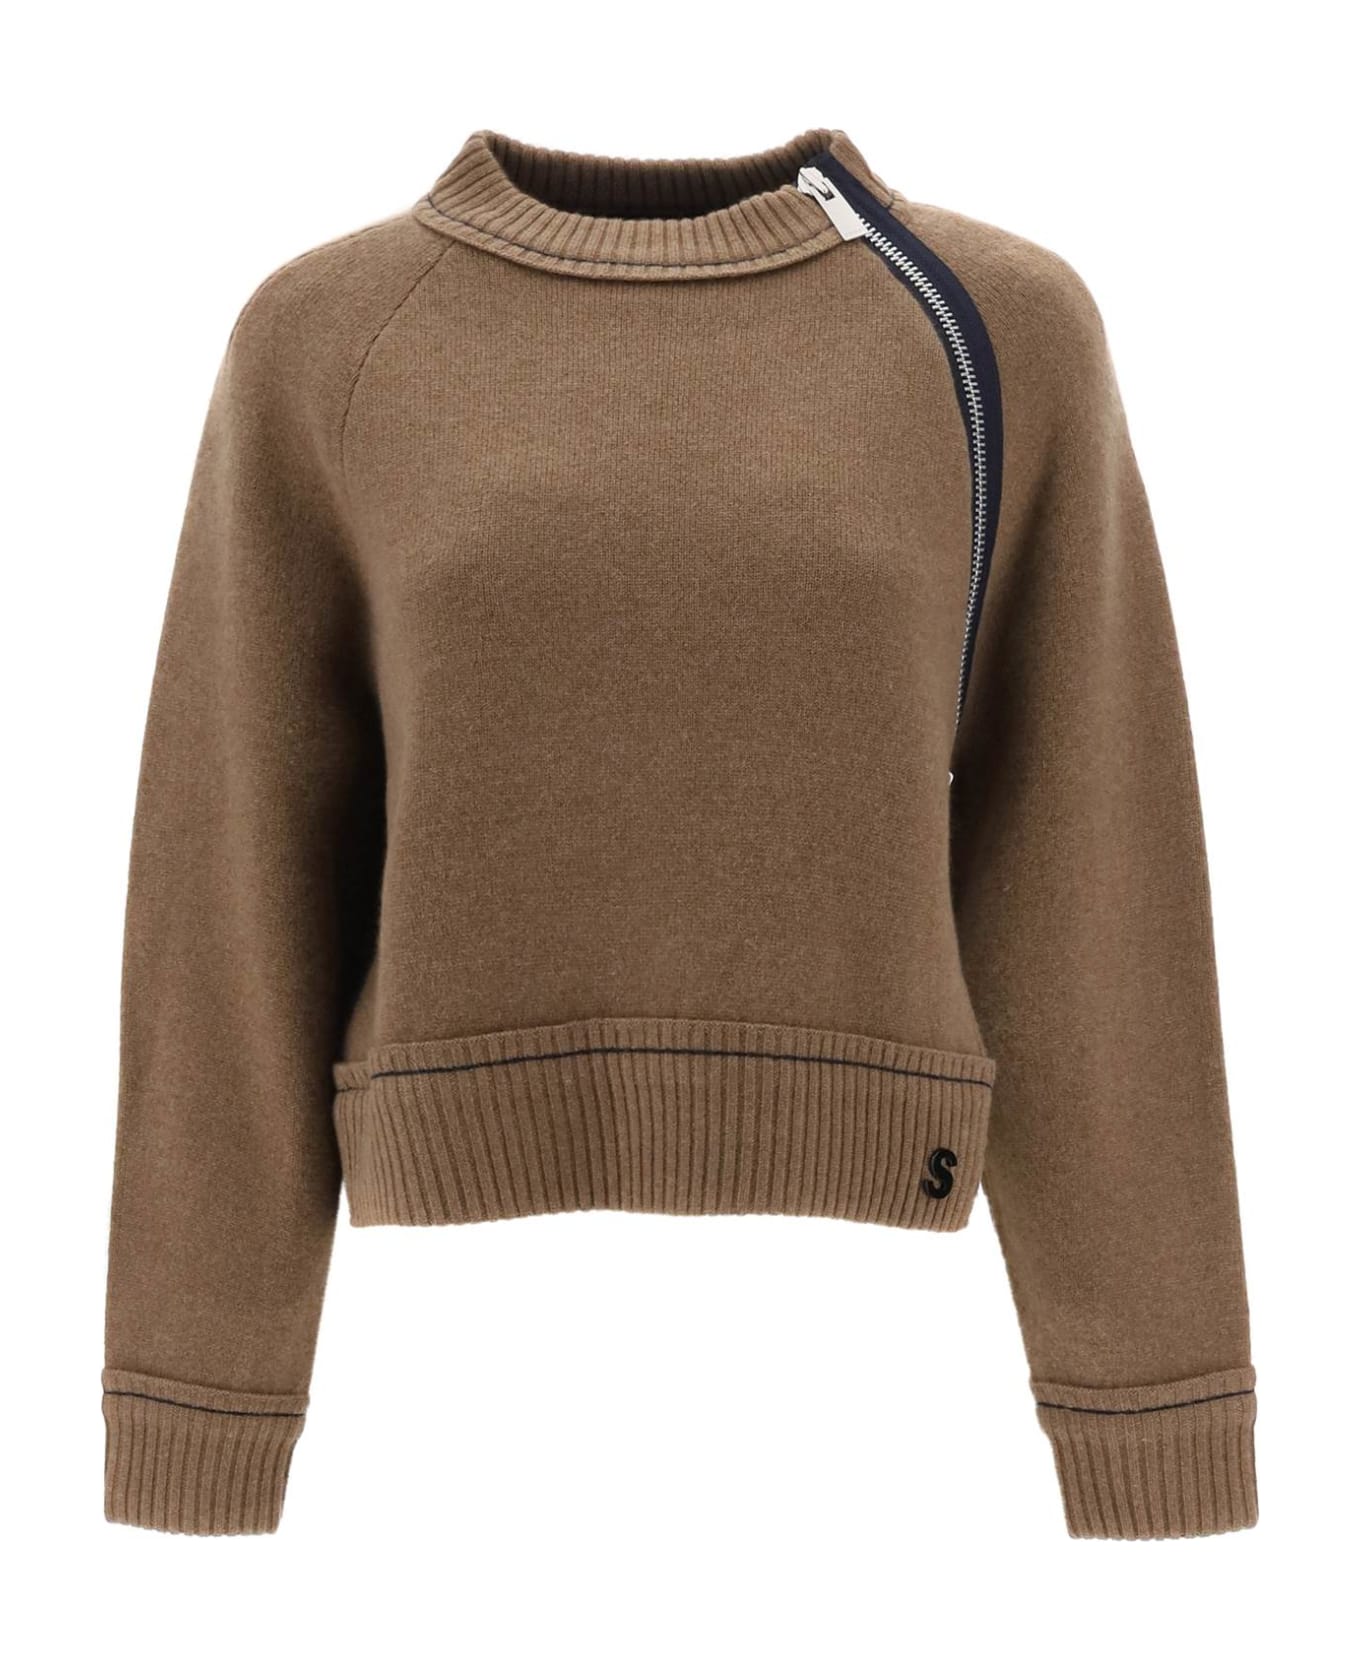 Sacai Cashmere Cotton Sweater - Beige